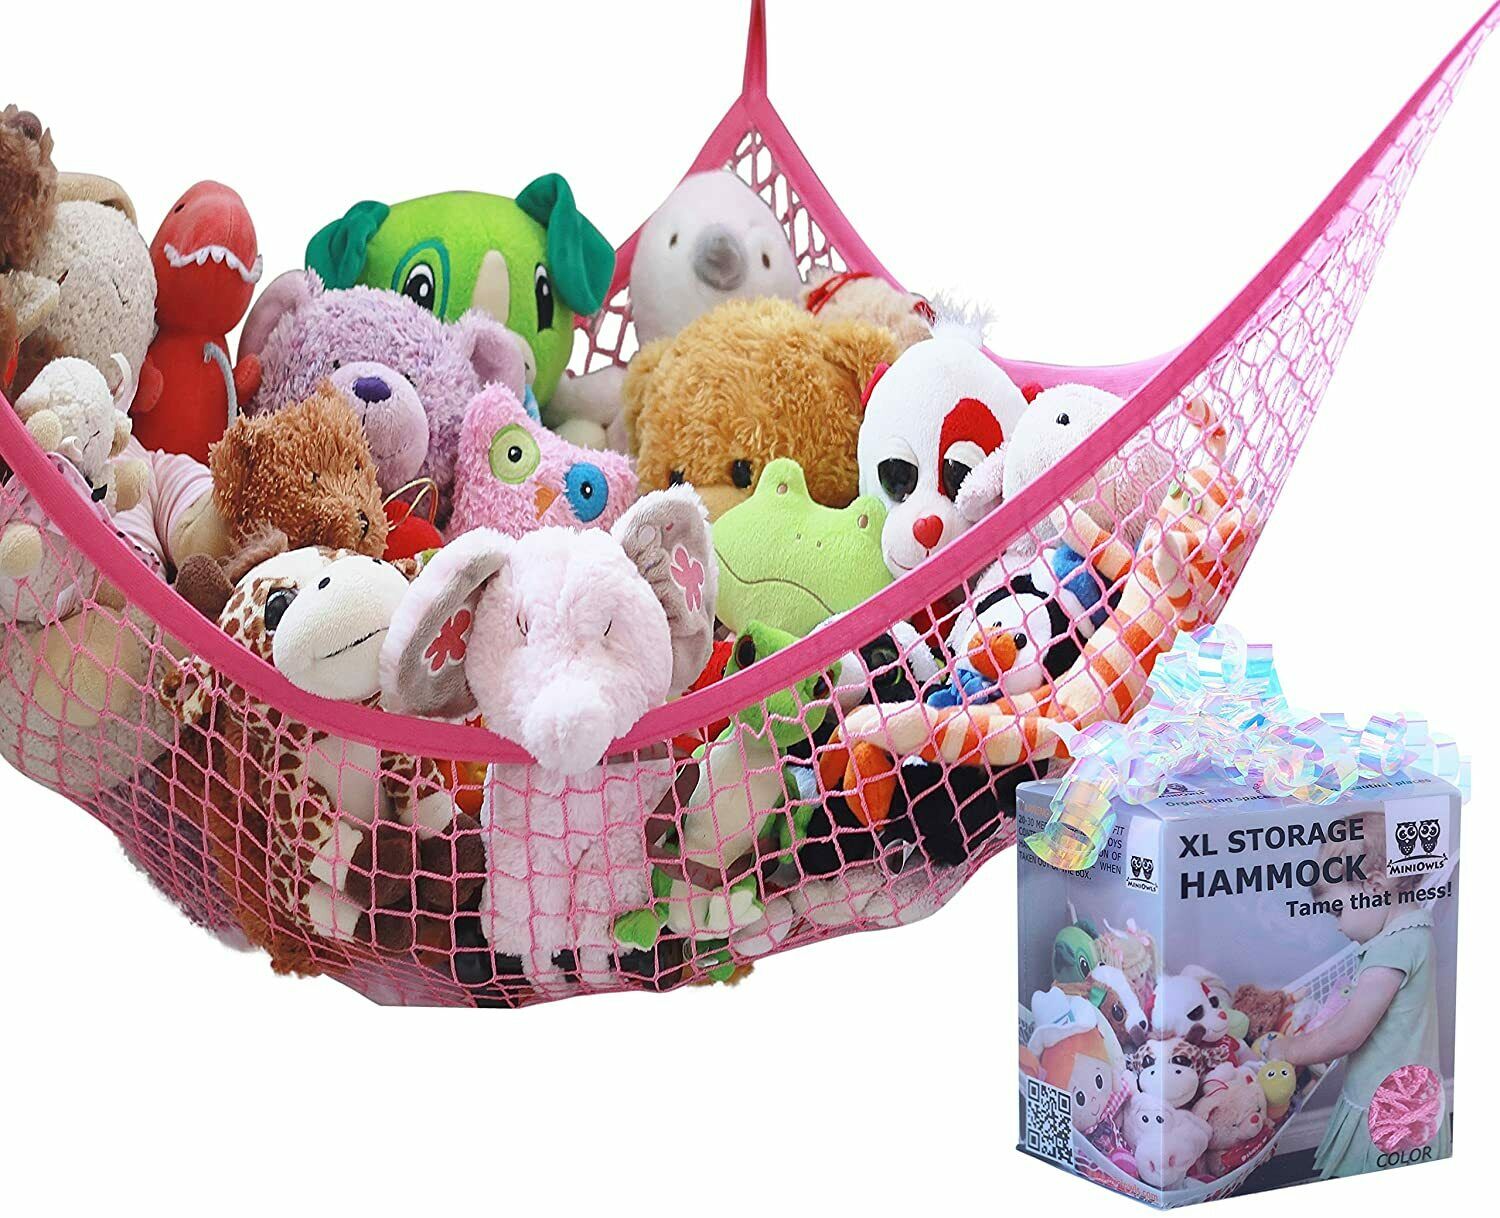 Miniowls Toy Hammock Organizer For Stuffed Animals Perfect Storage Idea For Tedd